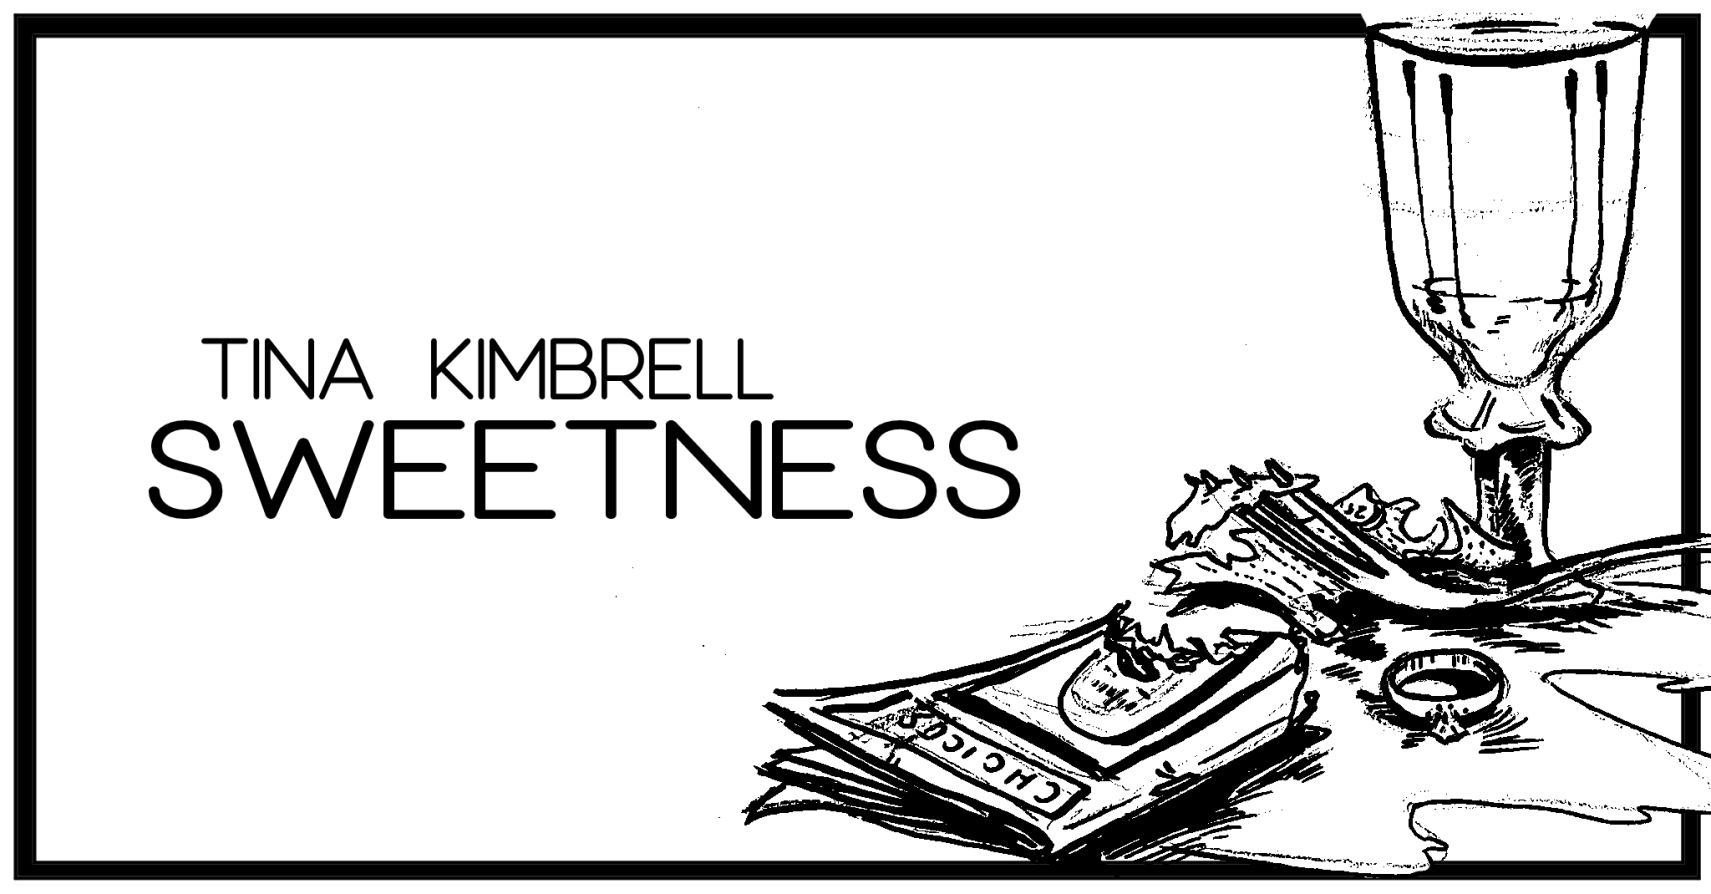 SWEETNESS by Tina Kimbrell